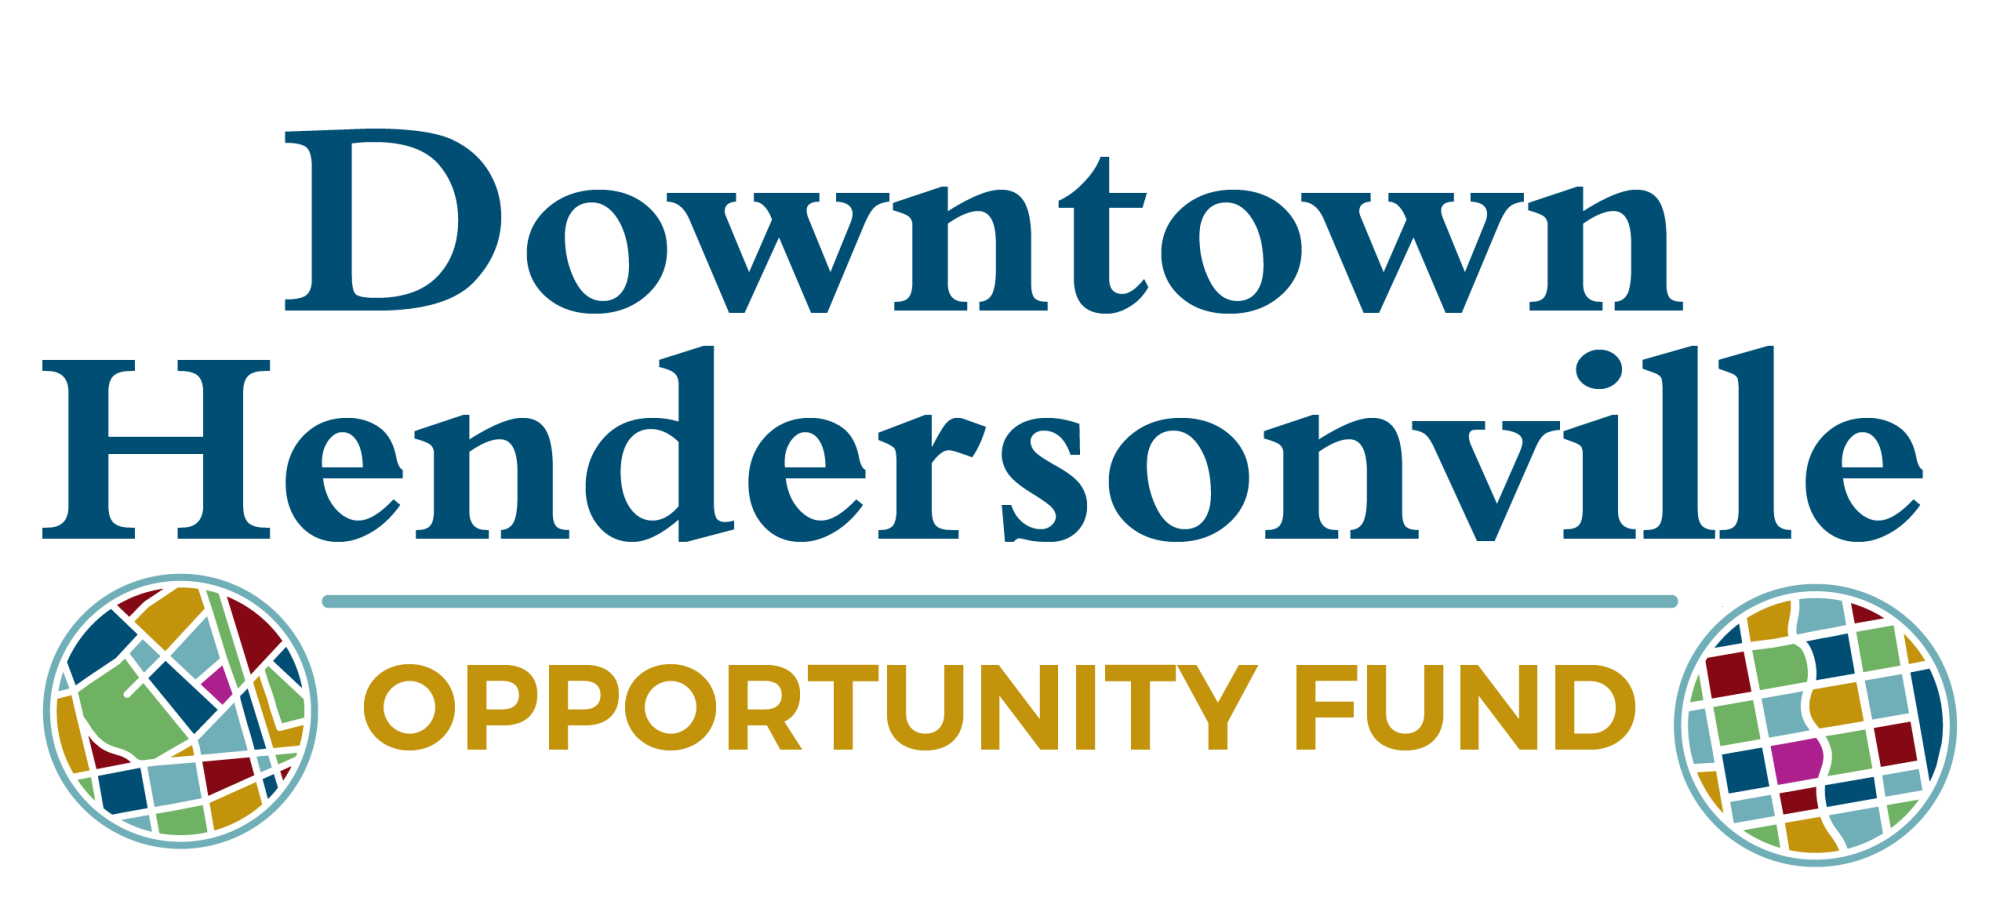 opportunity fund logo